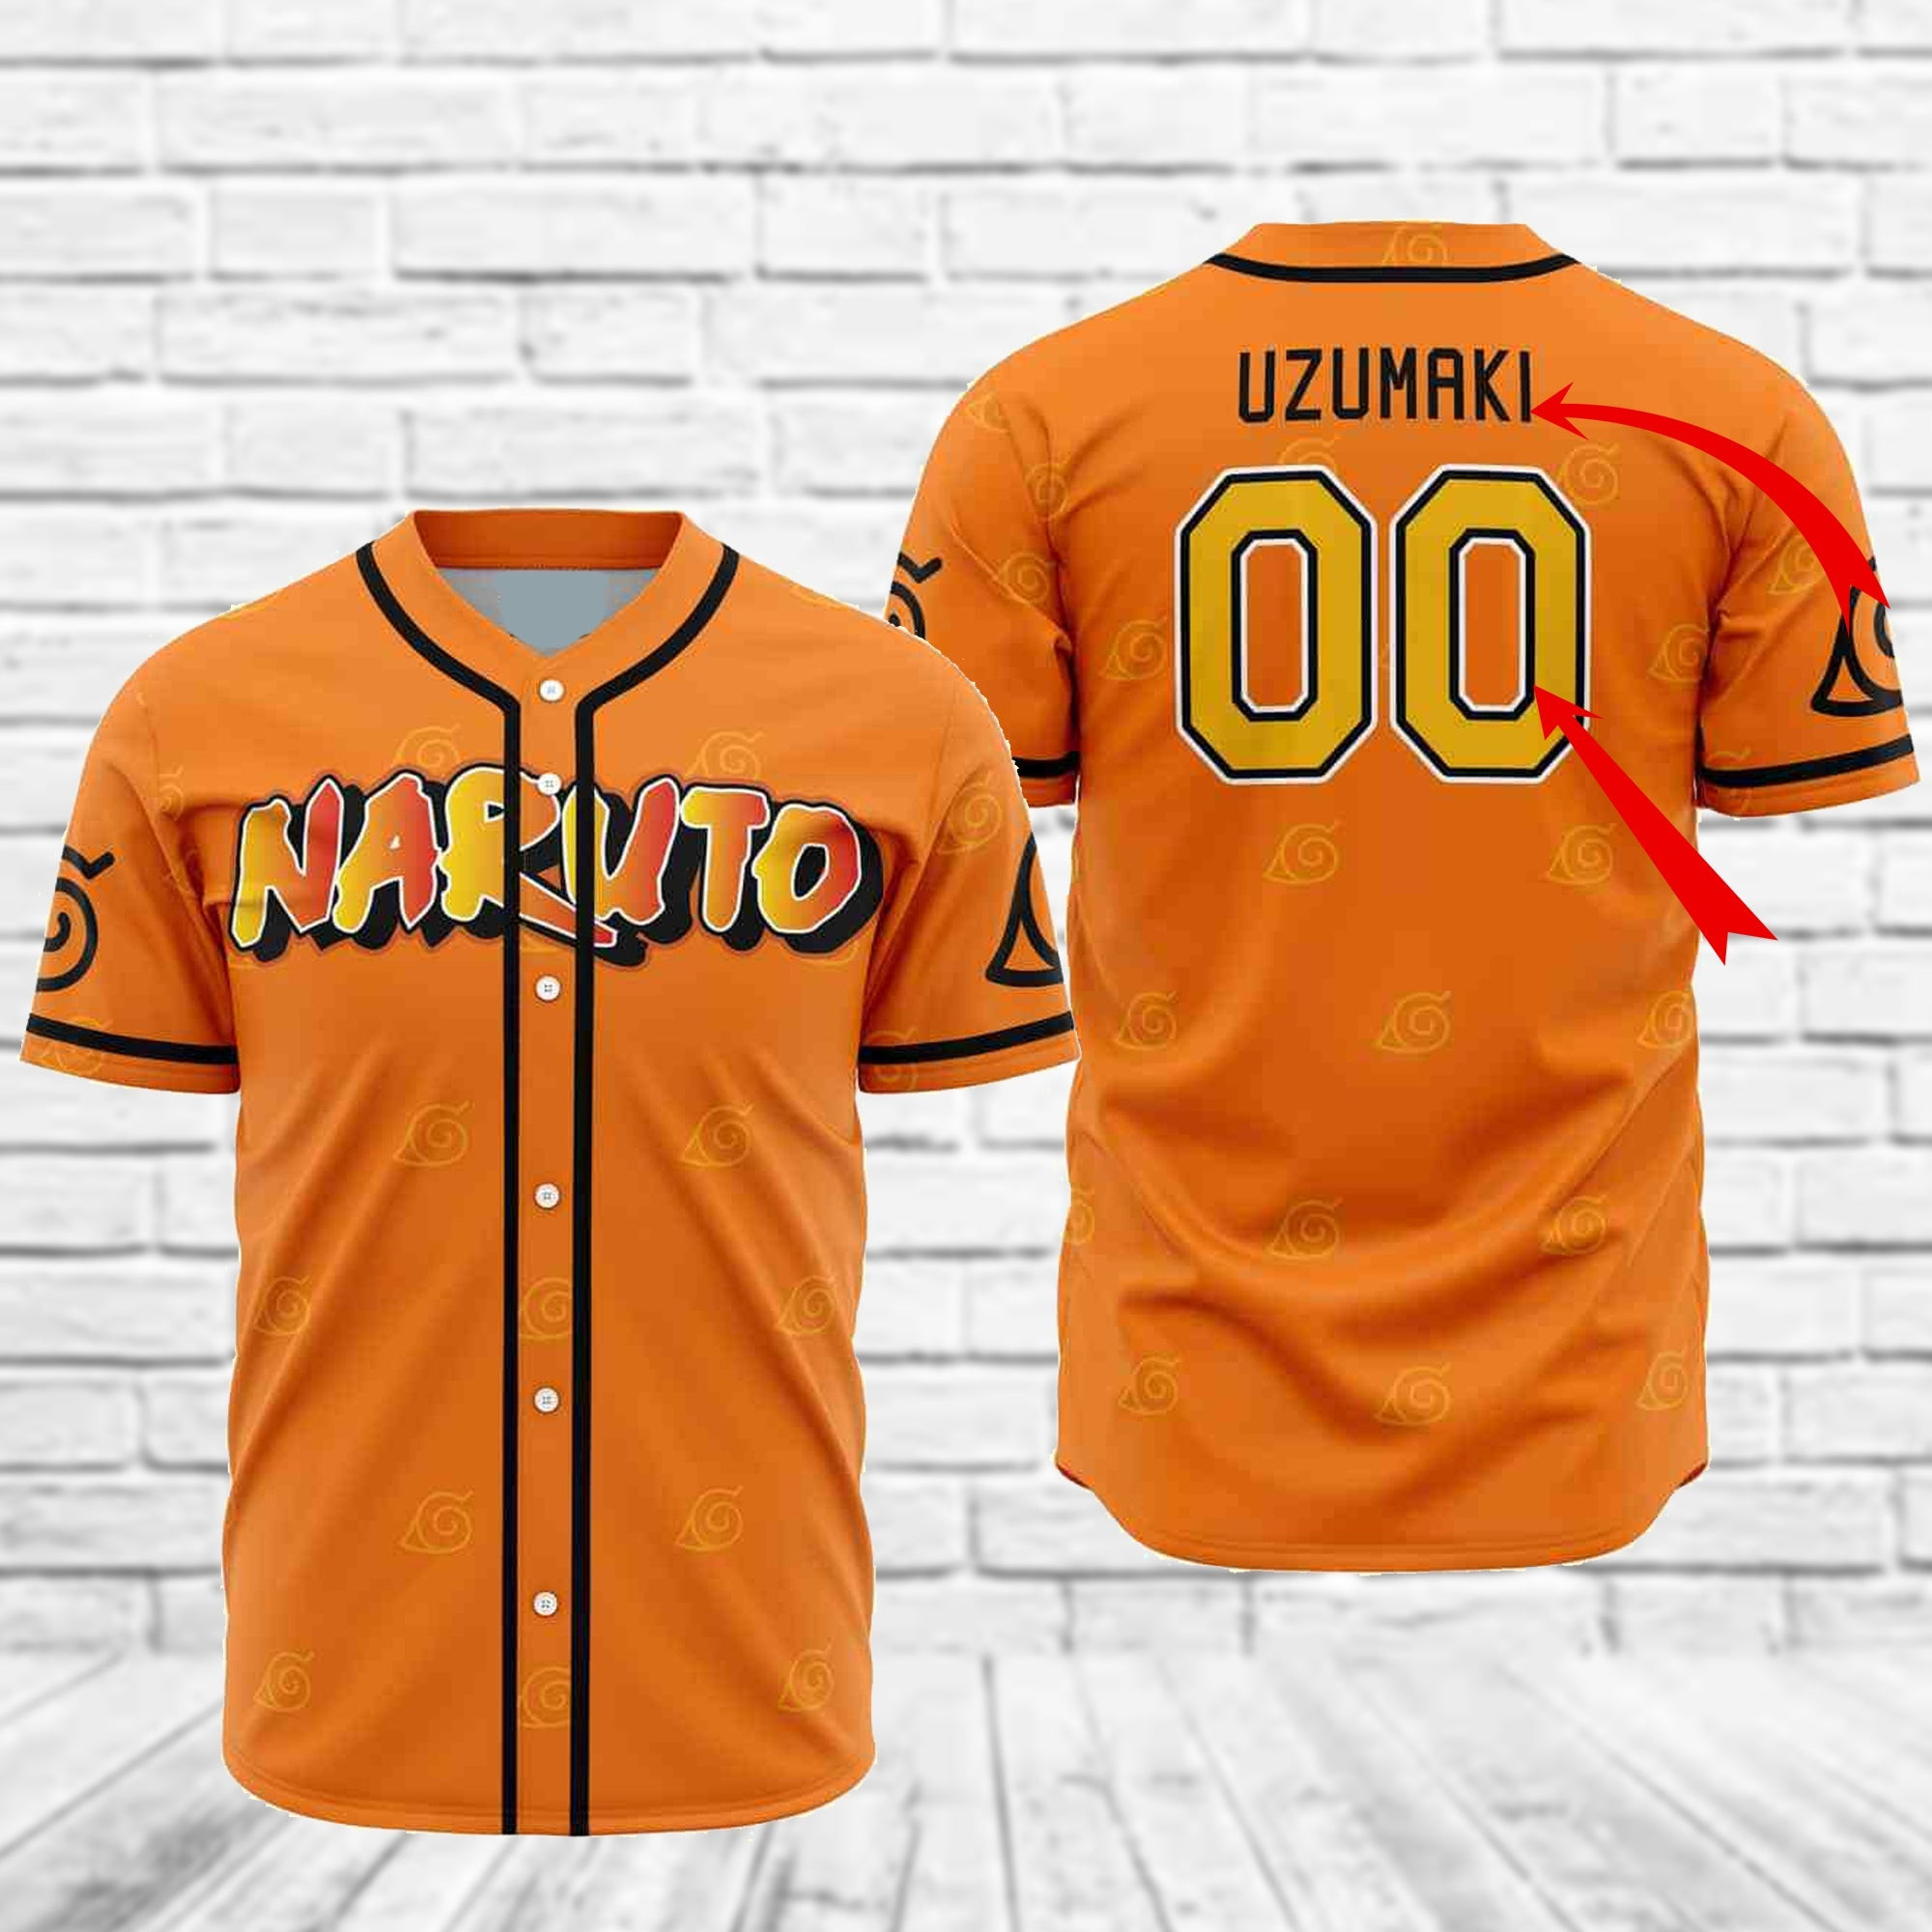 Personalized Naruto Uzumaki Baseball Jersey